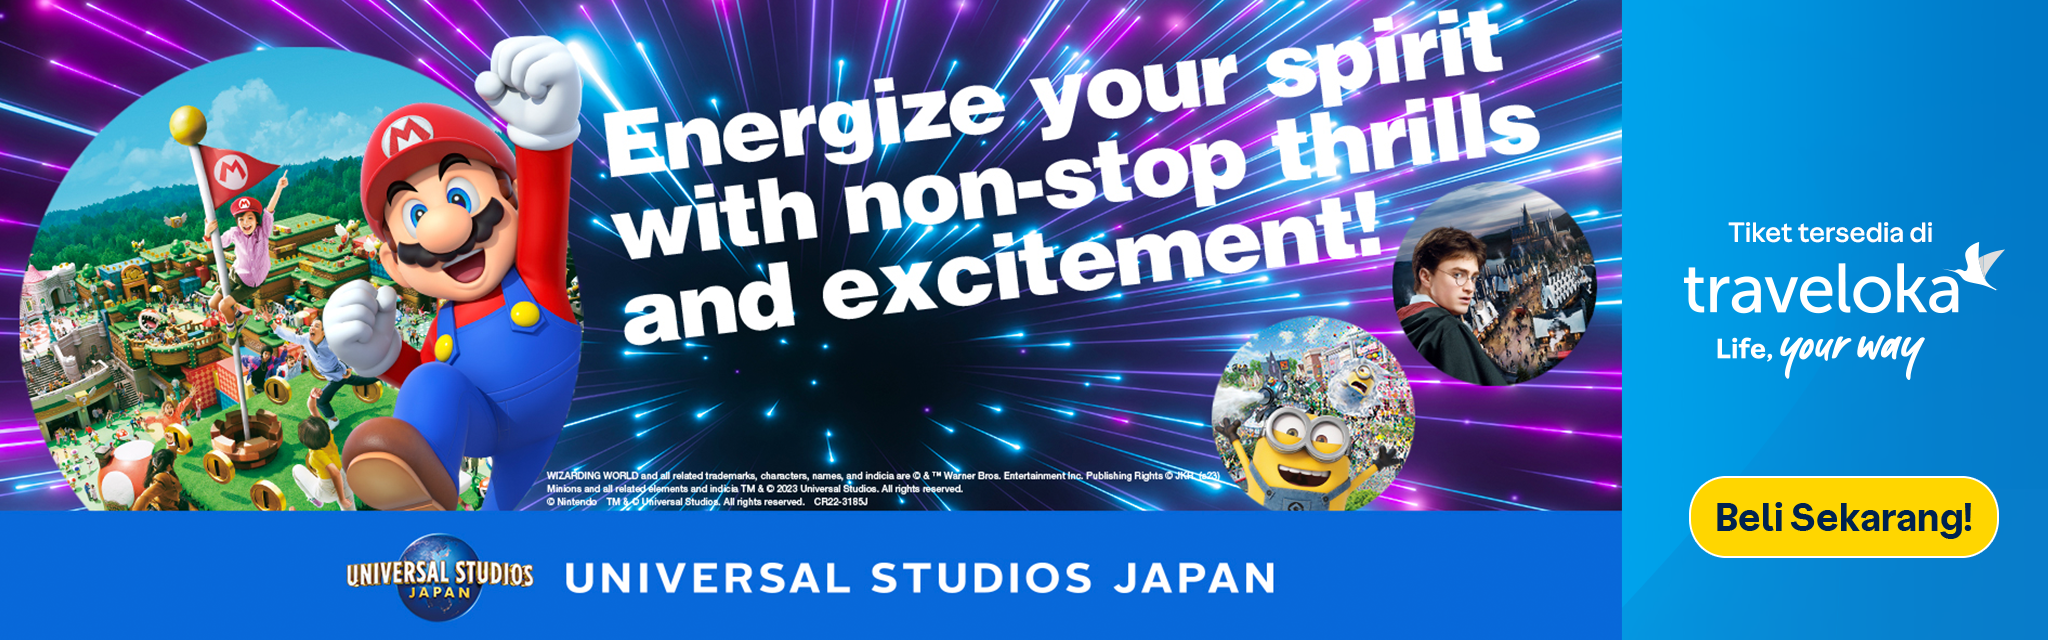 Booking tiket Universal Studios Japan di Traveloka & dapatkan promo menarik!